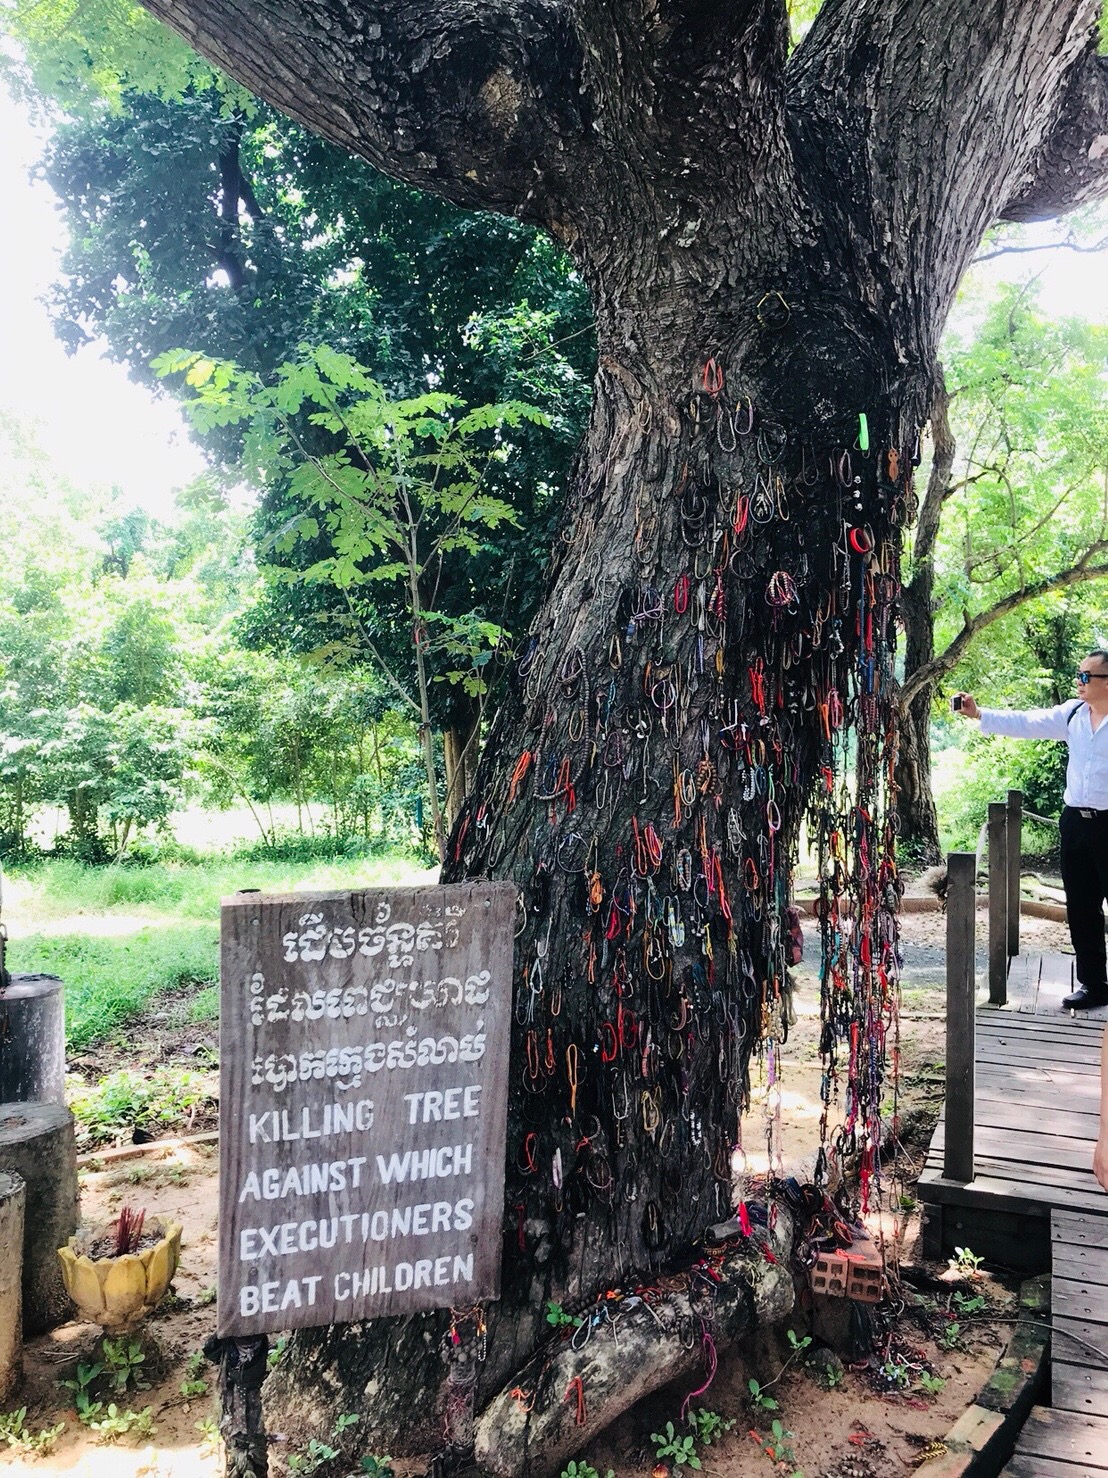 カンボジア 大量虐殺が行われた処刑場跡 キリング フィールドを訪れて感じた平和の尊さと命の大切さ Shulog